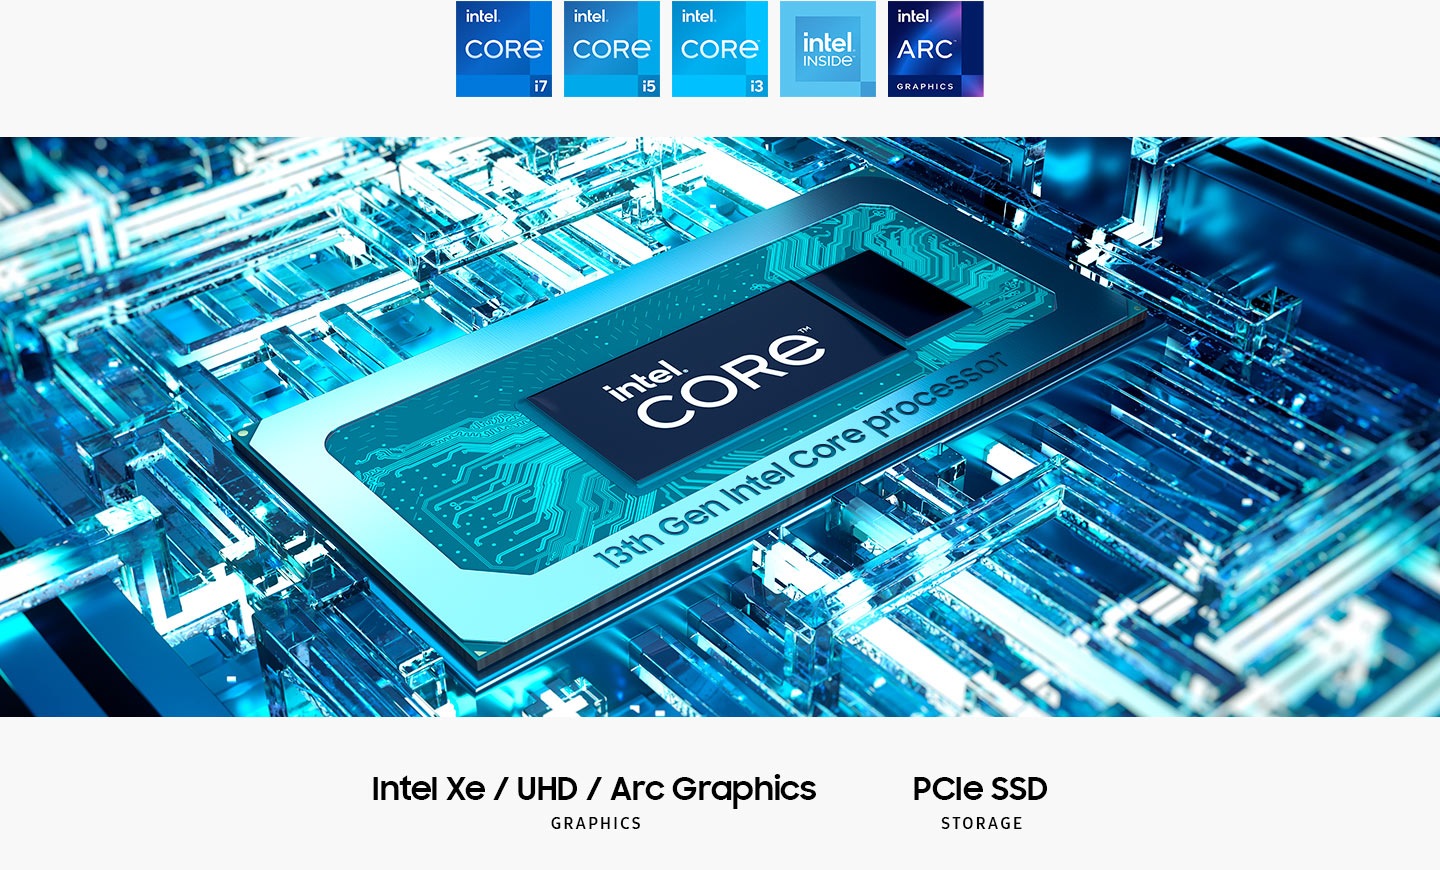 Процессор Intel® Core ™ 13 -го поколения находится на материнской плате с текстом Intel® Core ™ в середине. Intel XE / UHD / ARC GRAPHICS. PCIE SSD Storage. Отображаются логотипы Intel Core i7, Intel Core I5, Intel Core I3, Intel Inside и Intel Arc